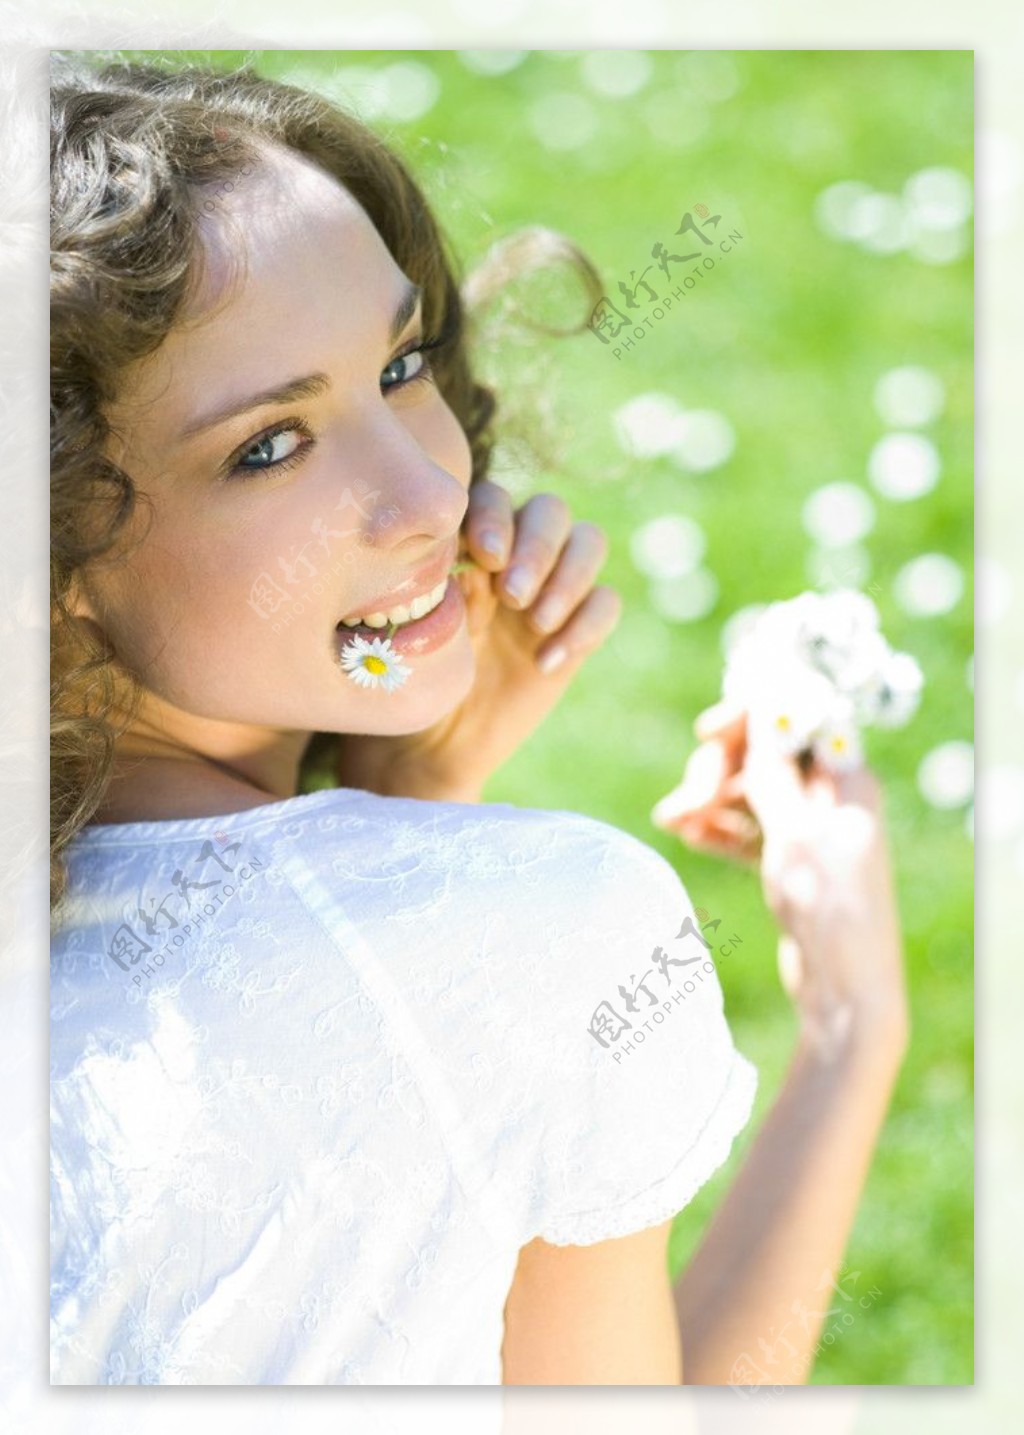 嘴含野花快乐生活的美女图片